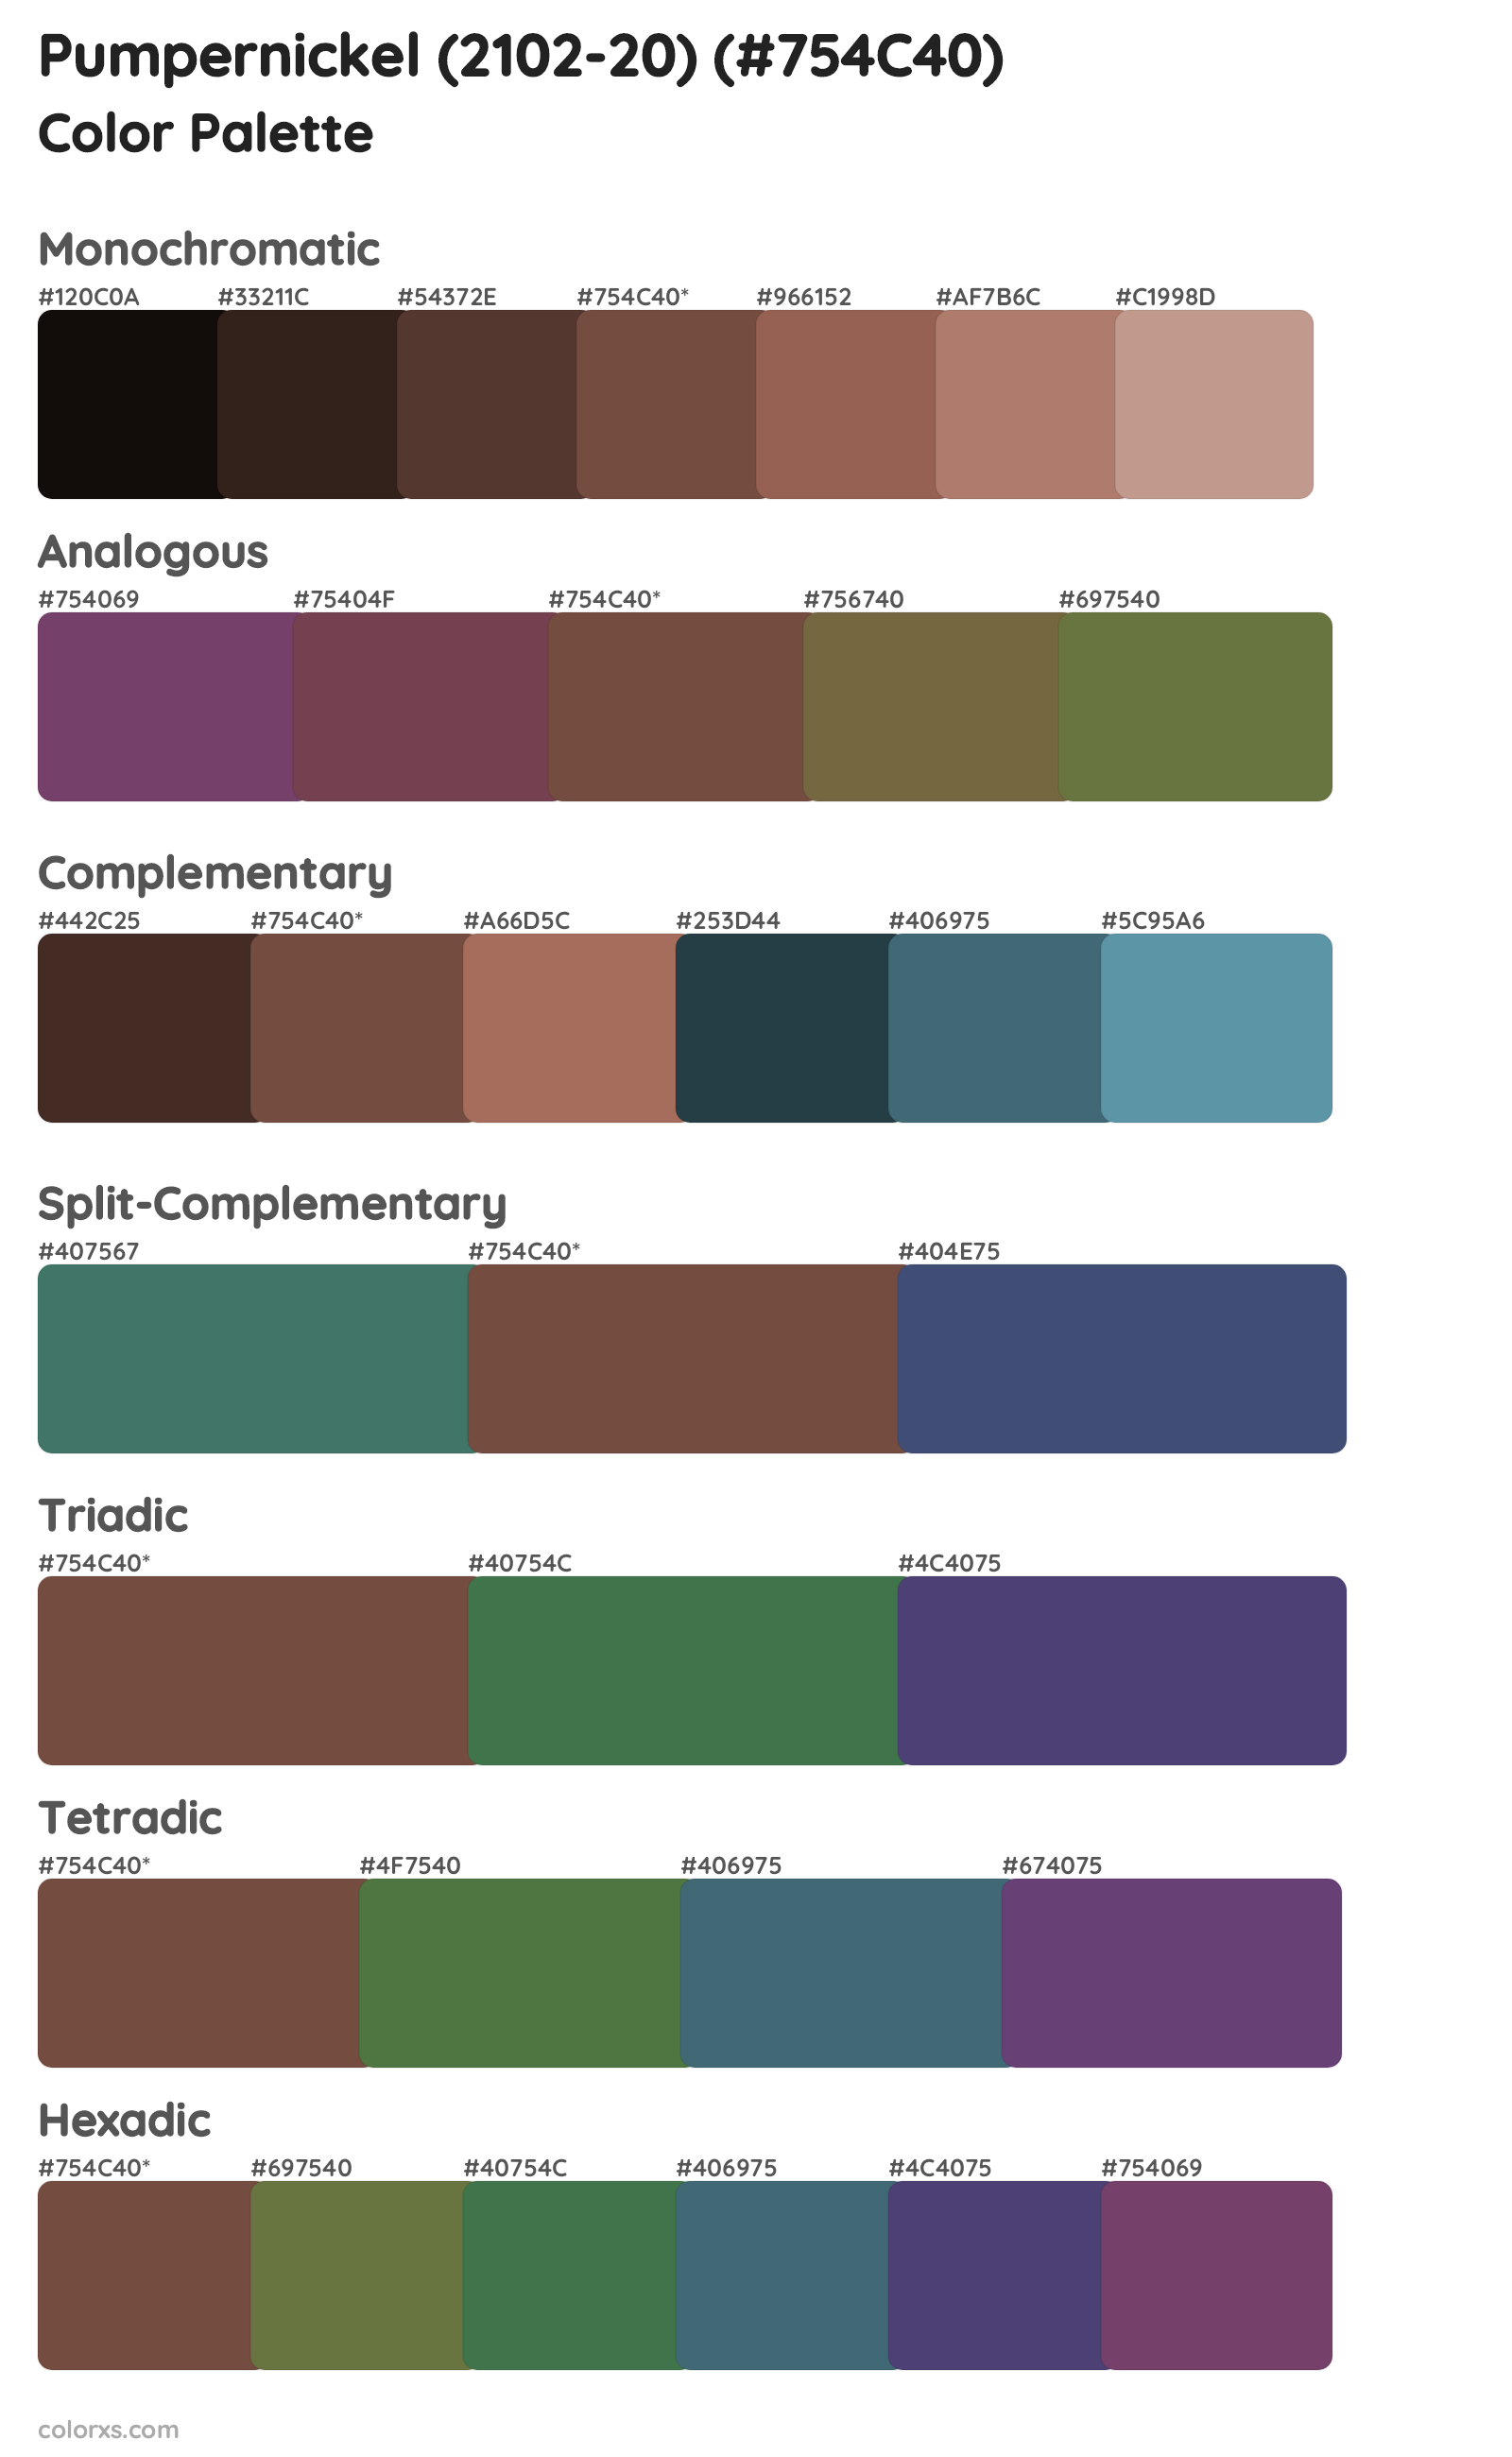 Pumpernickel (2102-20) Color Scheme Palettes